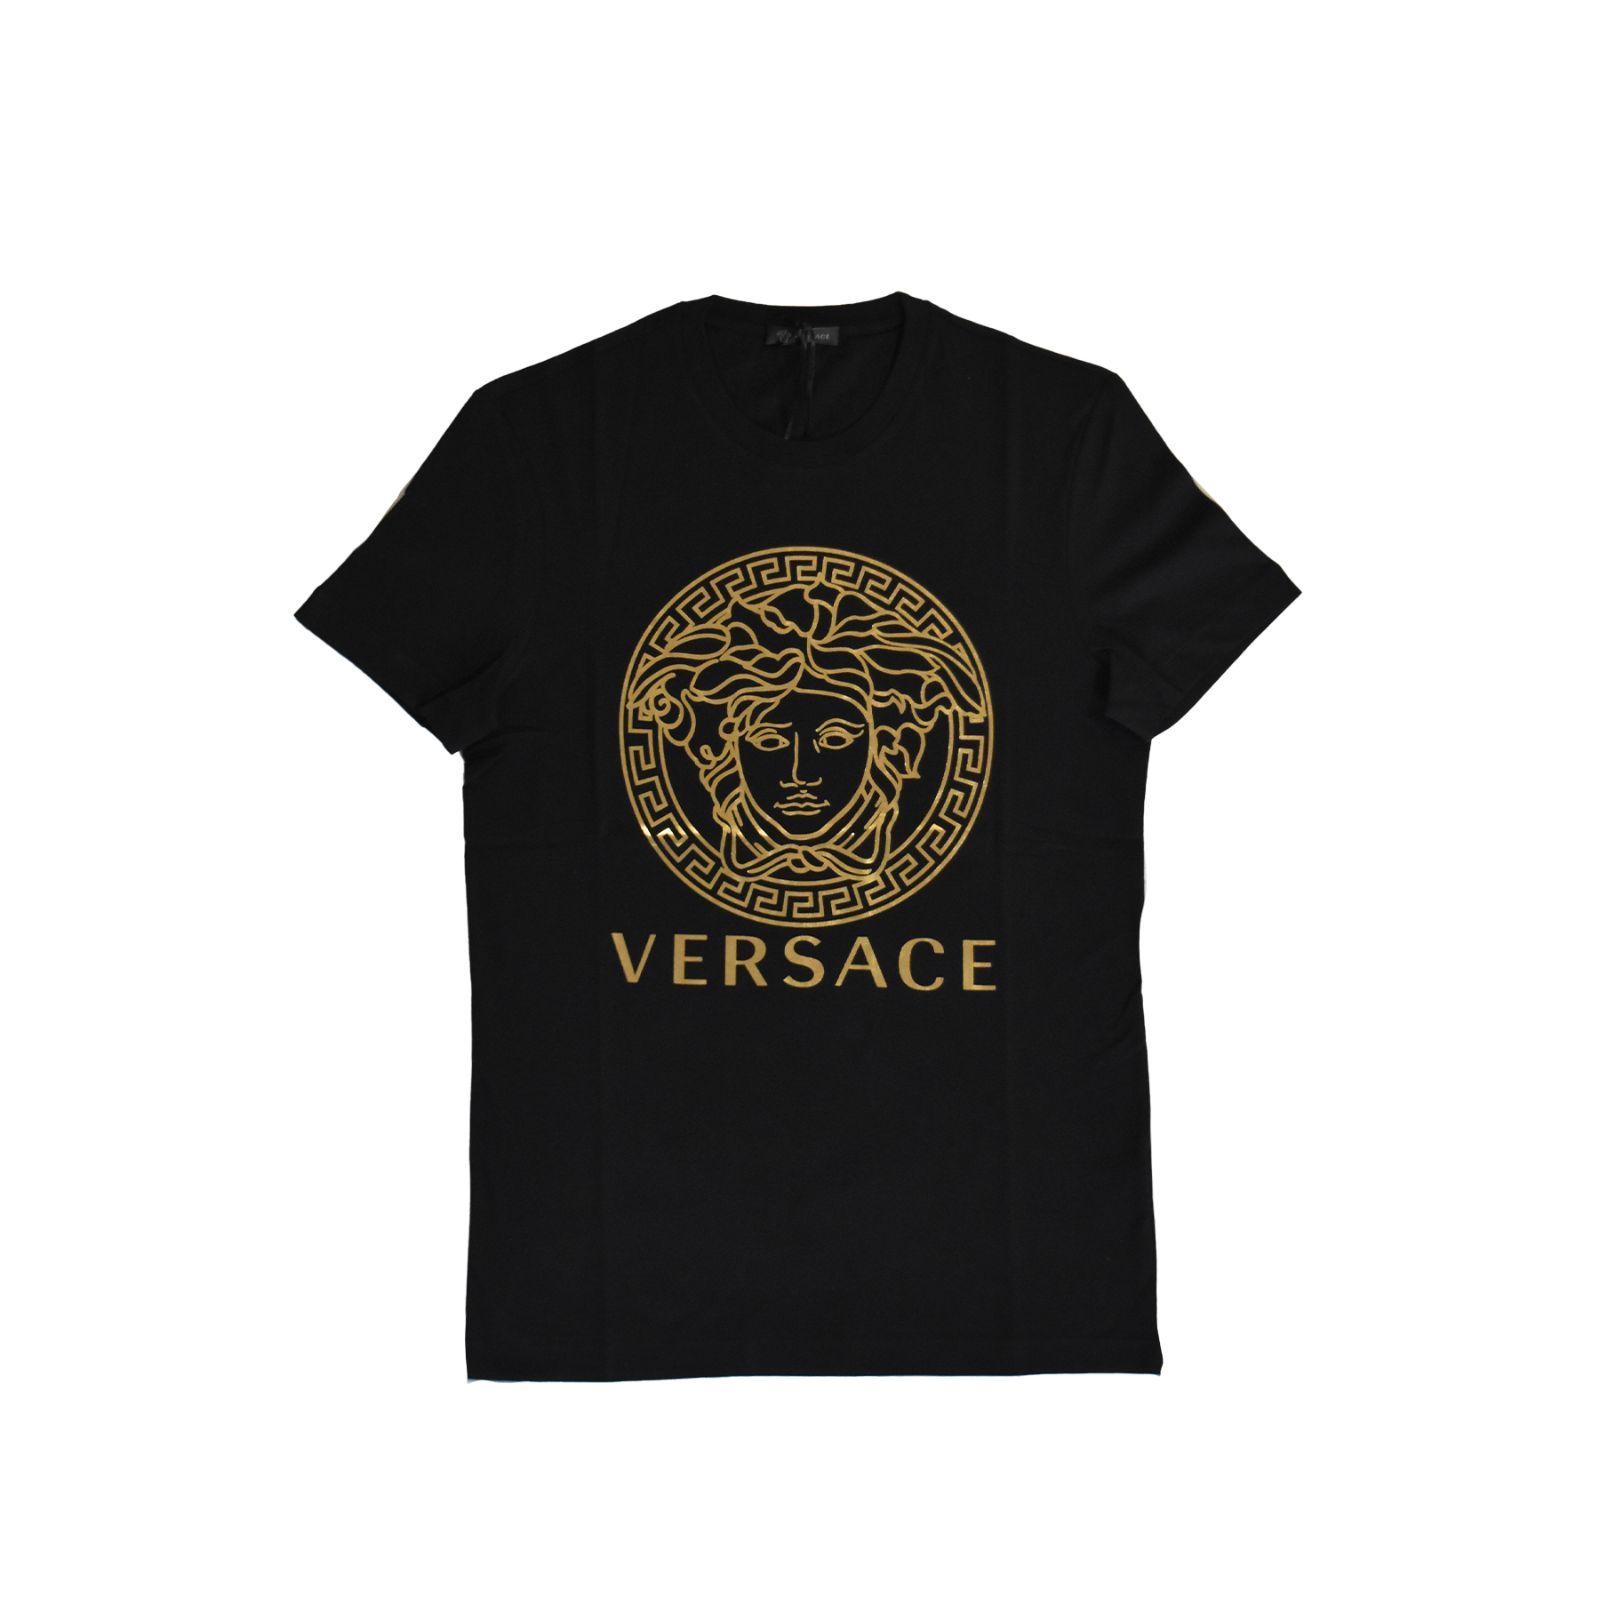 VERSACE フロントメデューサ Tシャツ 半袖 ヴェルサーチ 黒 新品/未使用 A89497S